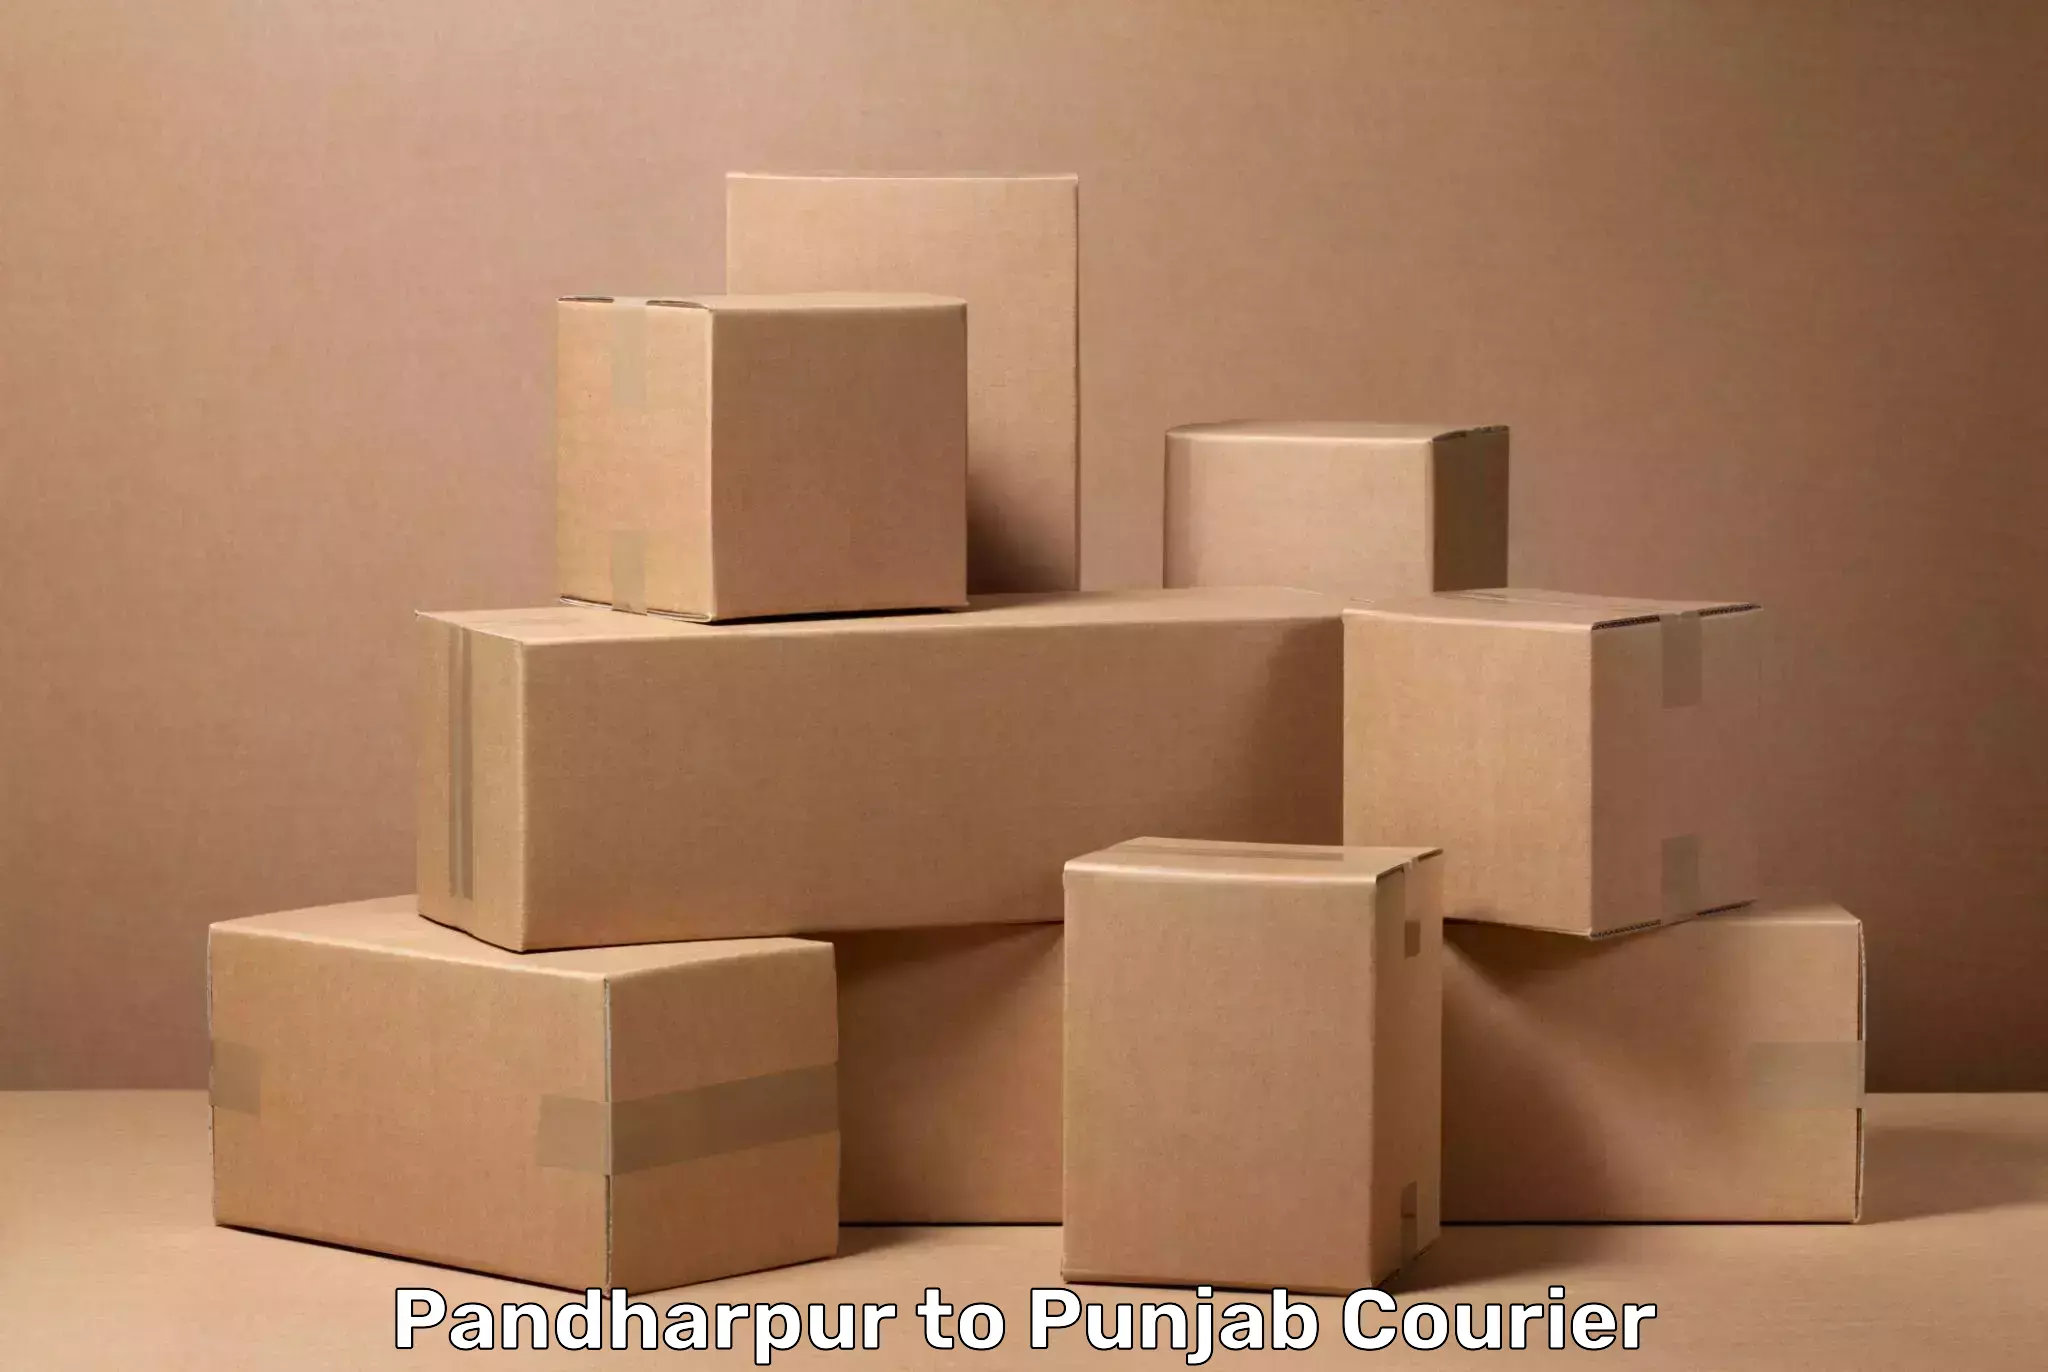 Baggage transport estimate Pandharpur to Jagraon